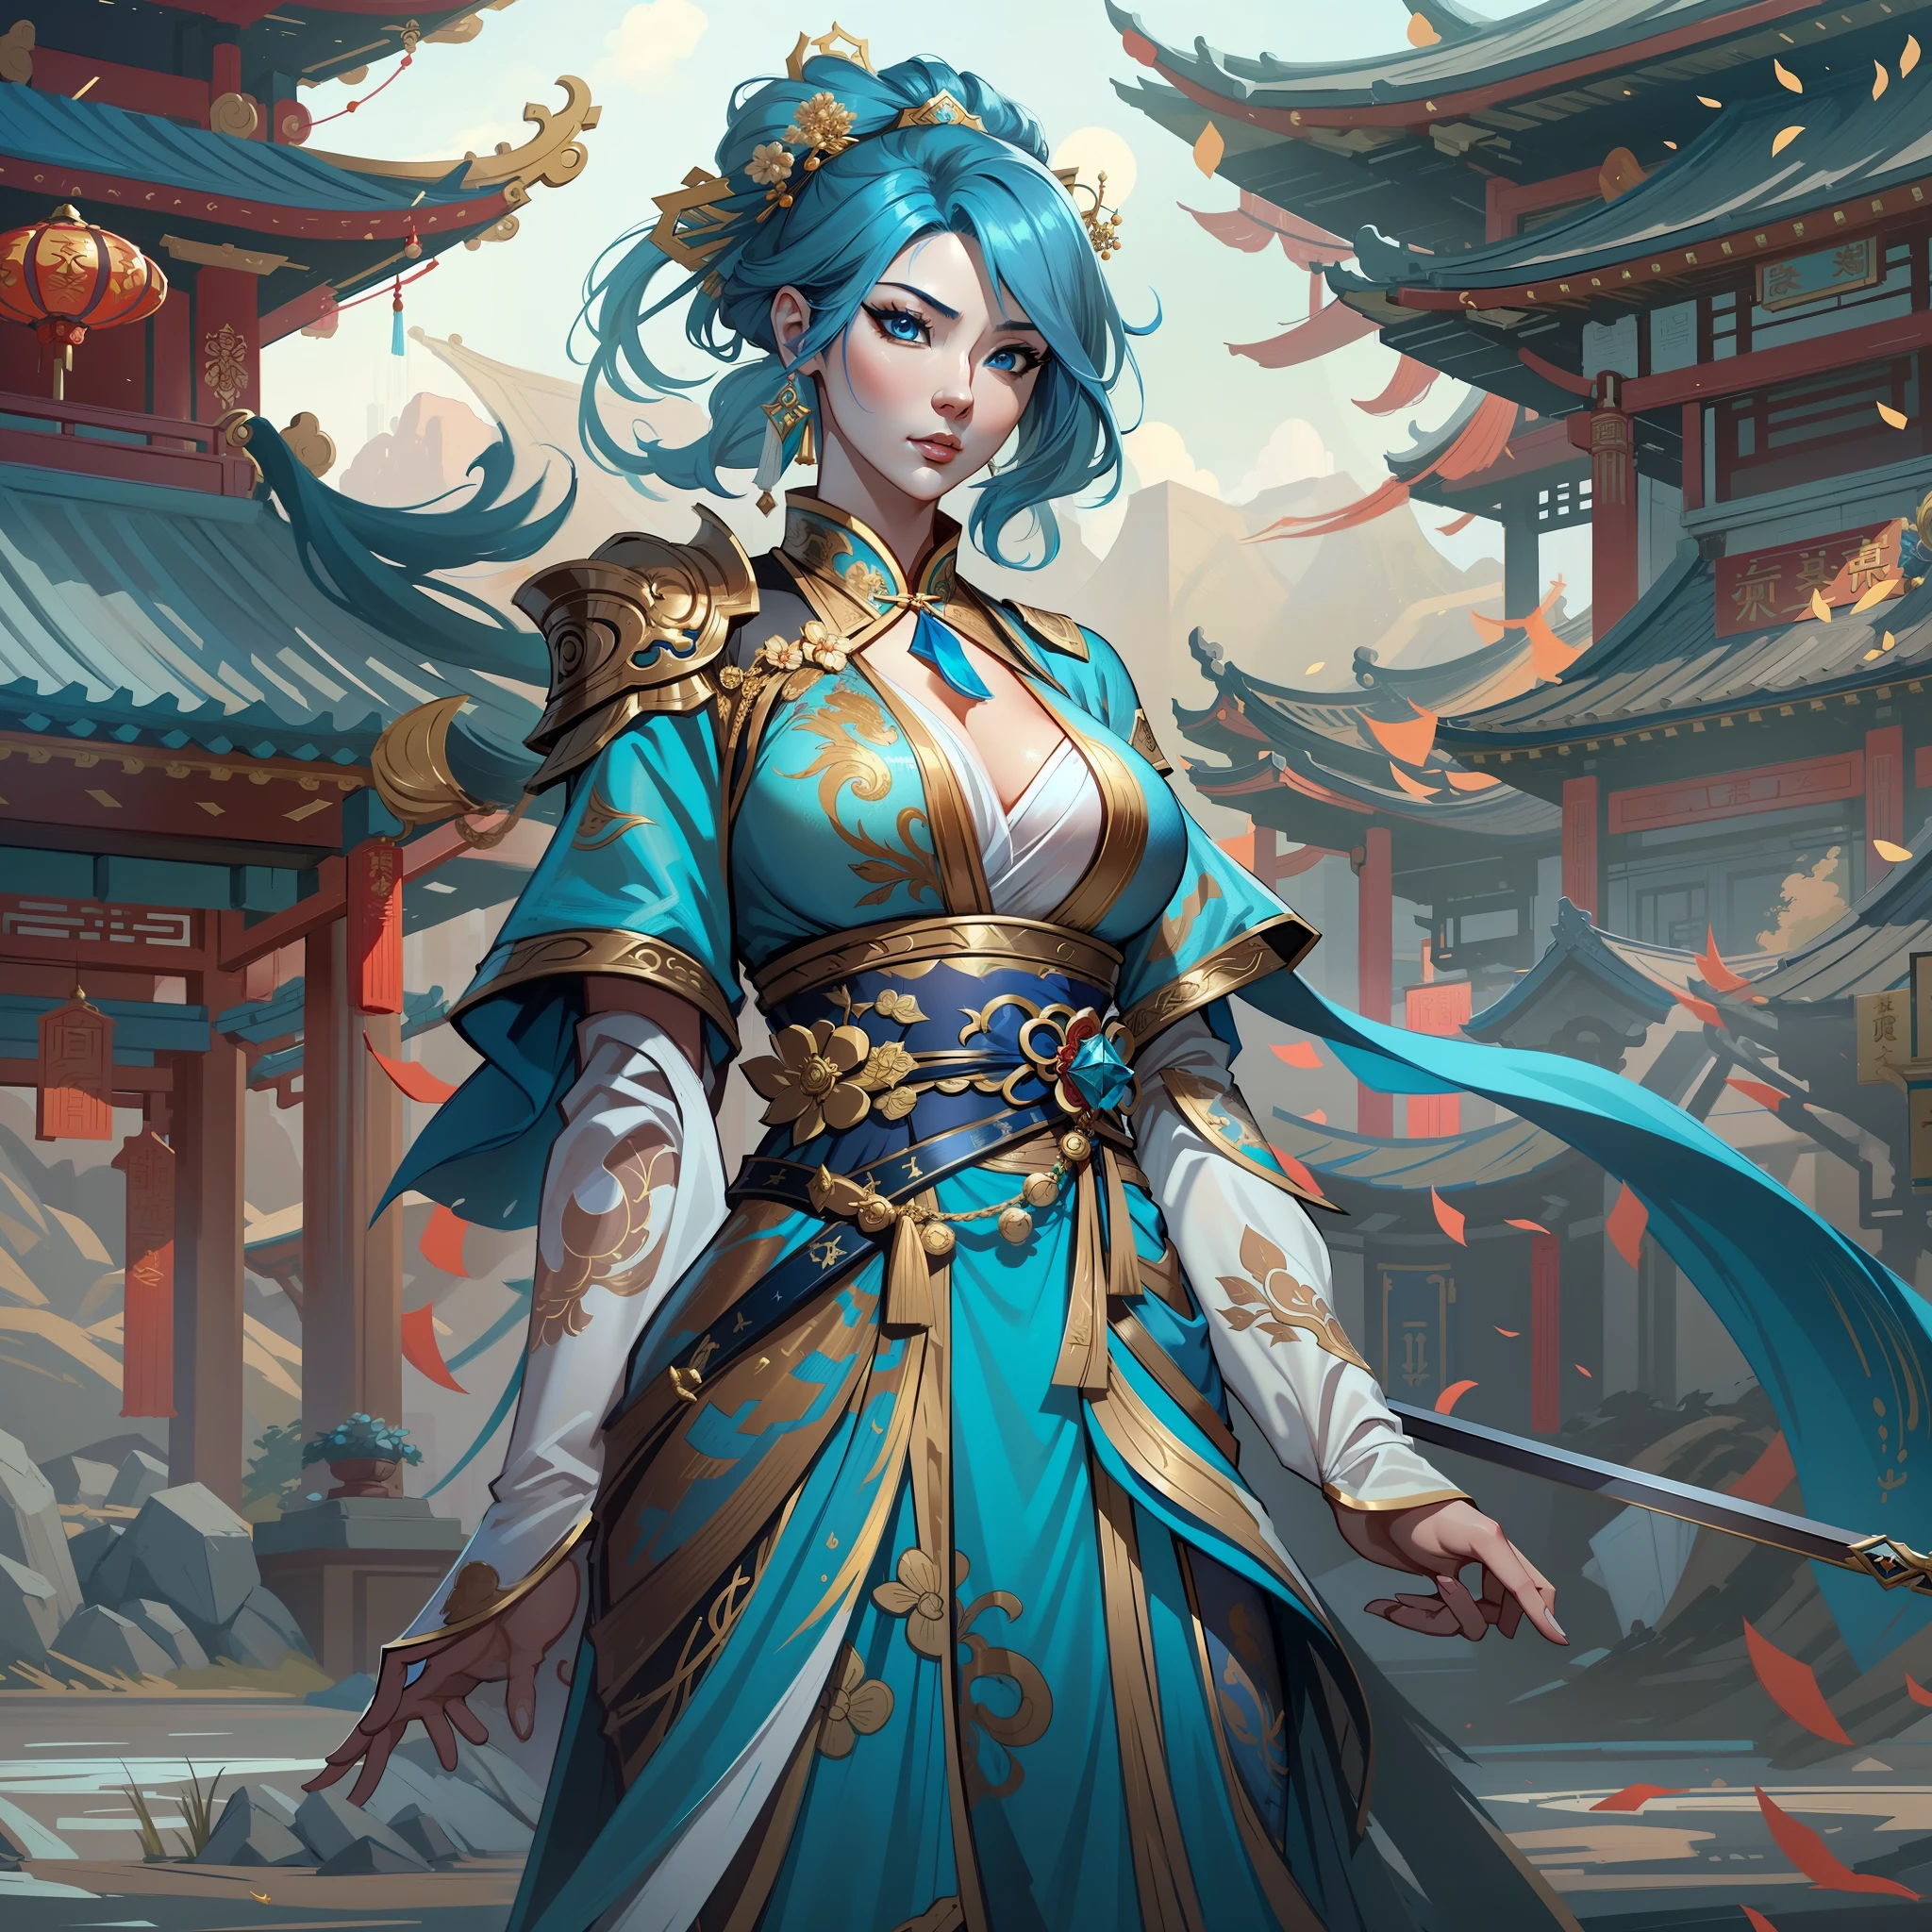 30代の小柄な女性のクローズアップ, 青い目と海のような青い髪を持つ, 青と黒のガウンドレスを着て, 青い目をした中国の皇后, 女性剣士, 中国の王女, 中国寺院に立つ, 新しい衣装コンセプトデザイン, ブレイドアンドソウル風, 全身キャラクターコンセプト, 詳細なキャラクターデザイン, ヤン・ジンにインスピレーションを得た, 李梅樹に触発されて, 月をテーマにした衣装, 金色のアクセントが付いた衣装, ジュ・リアンに触発されて, カラーコンセプトアート, highly 詳細なキャラクターデザイン, 非常に詳細な顔, アイ・シュアンにインスピレーションを受けて, very 非常に詳細な顔, アンリアルエンジンレンダリング, ファイナルファンタジー14スタイル